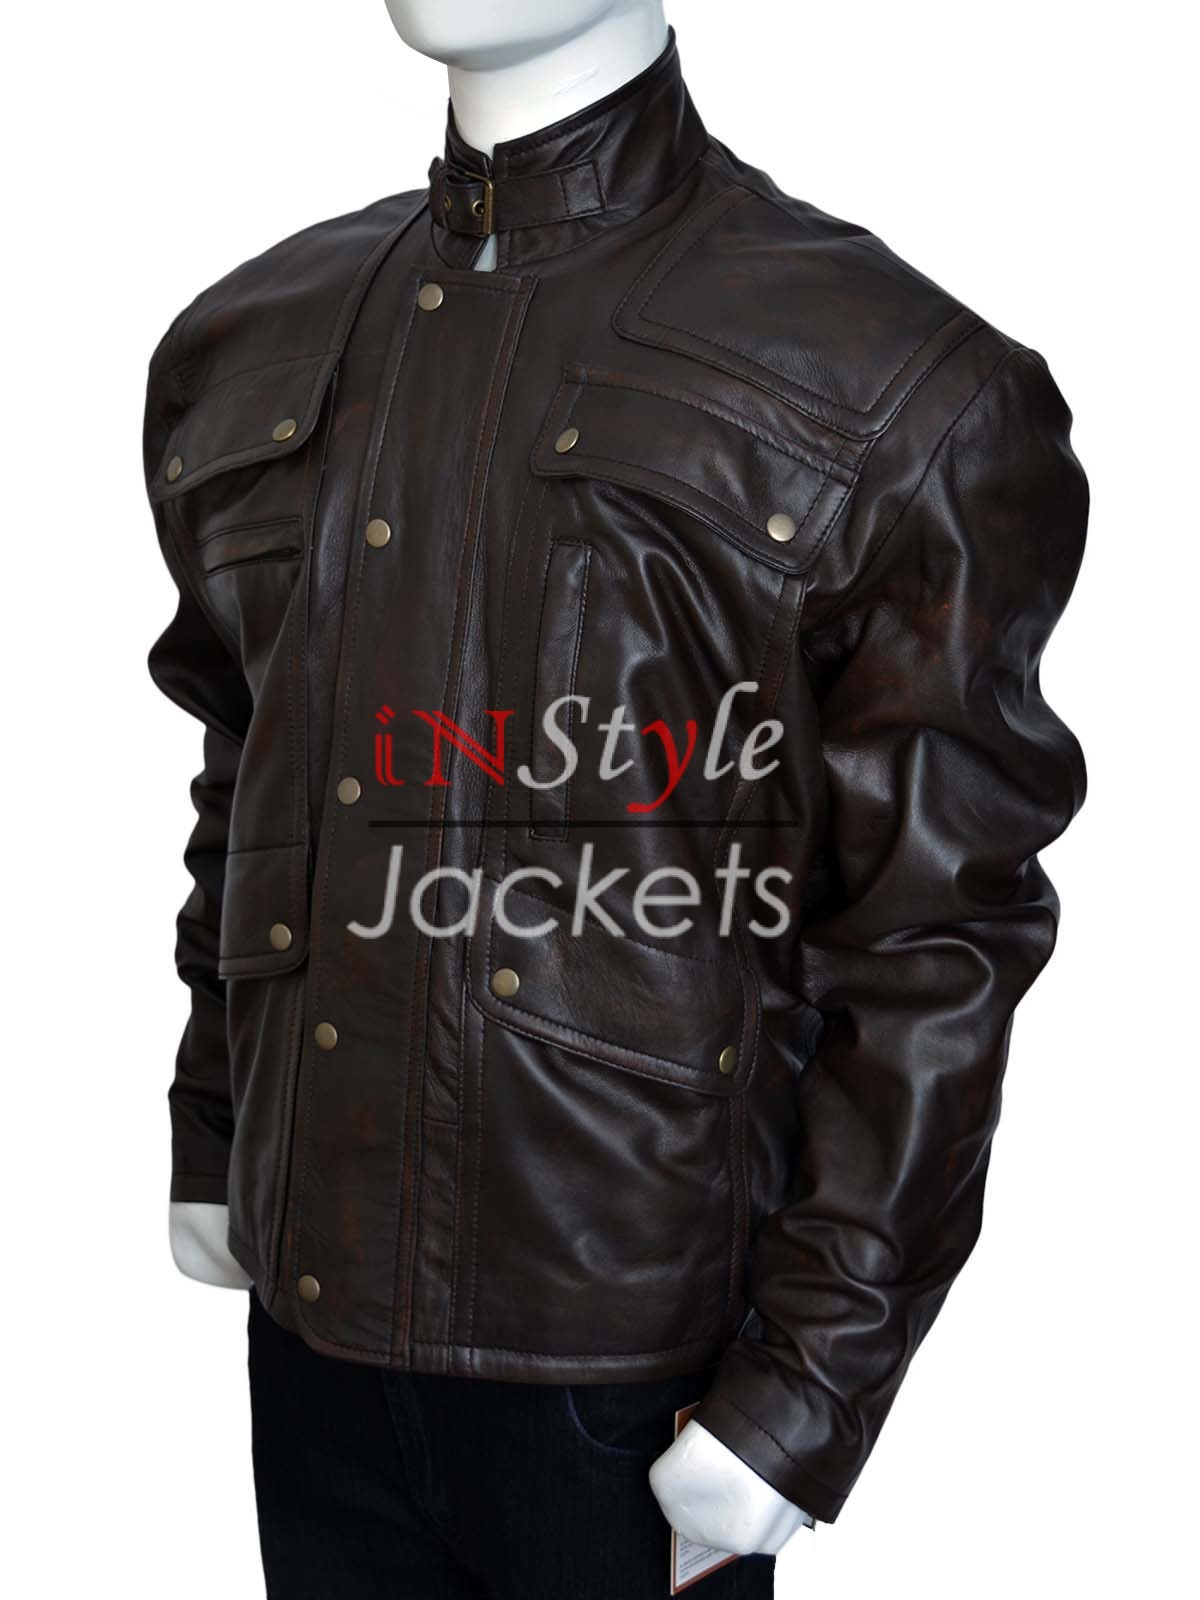 Jensen Ackles Supernatural Brown Leather Jacket - Instylejackets